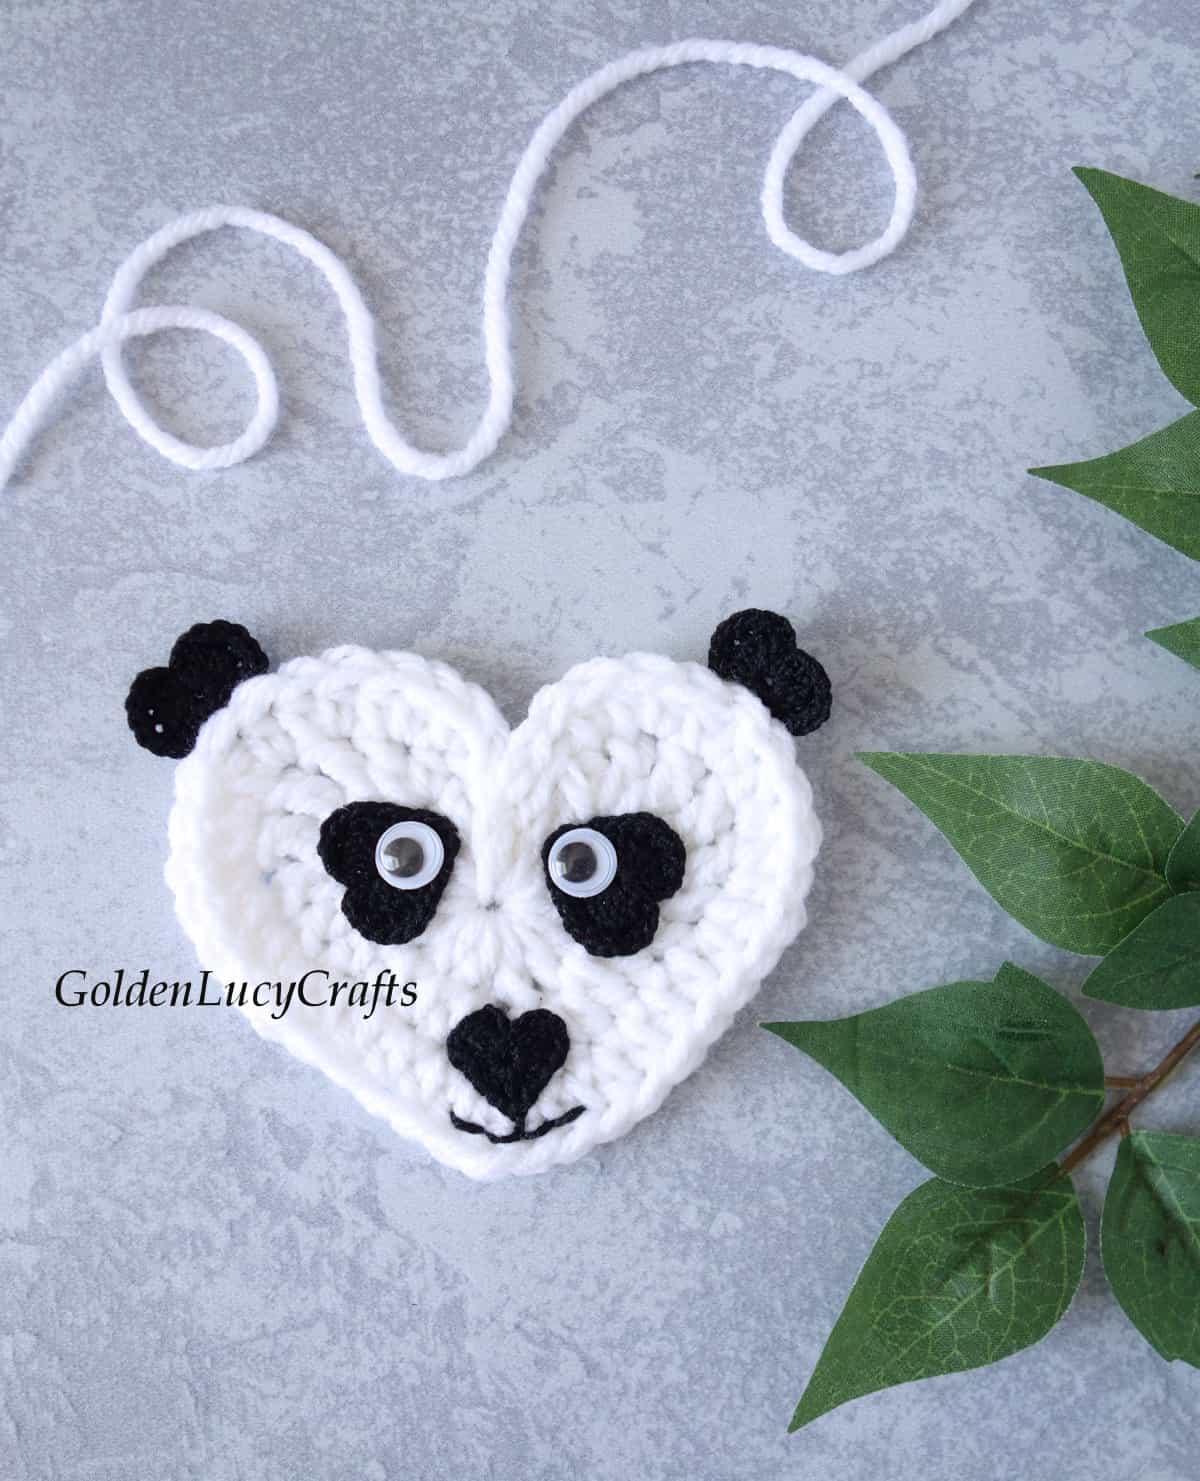 Crochet heart-shaped panda applique.